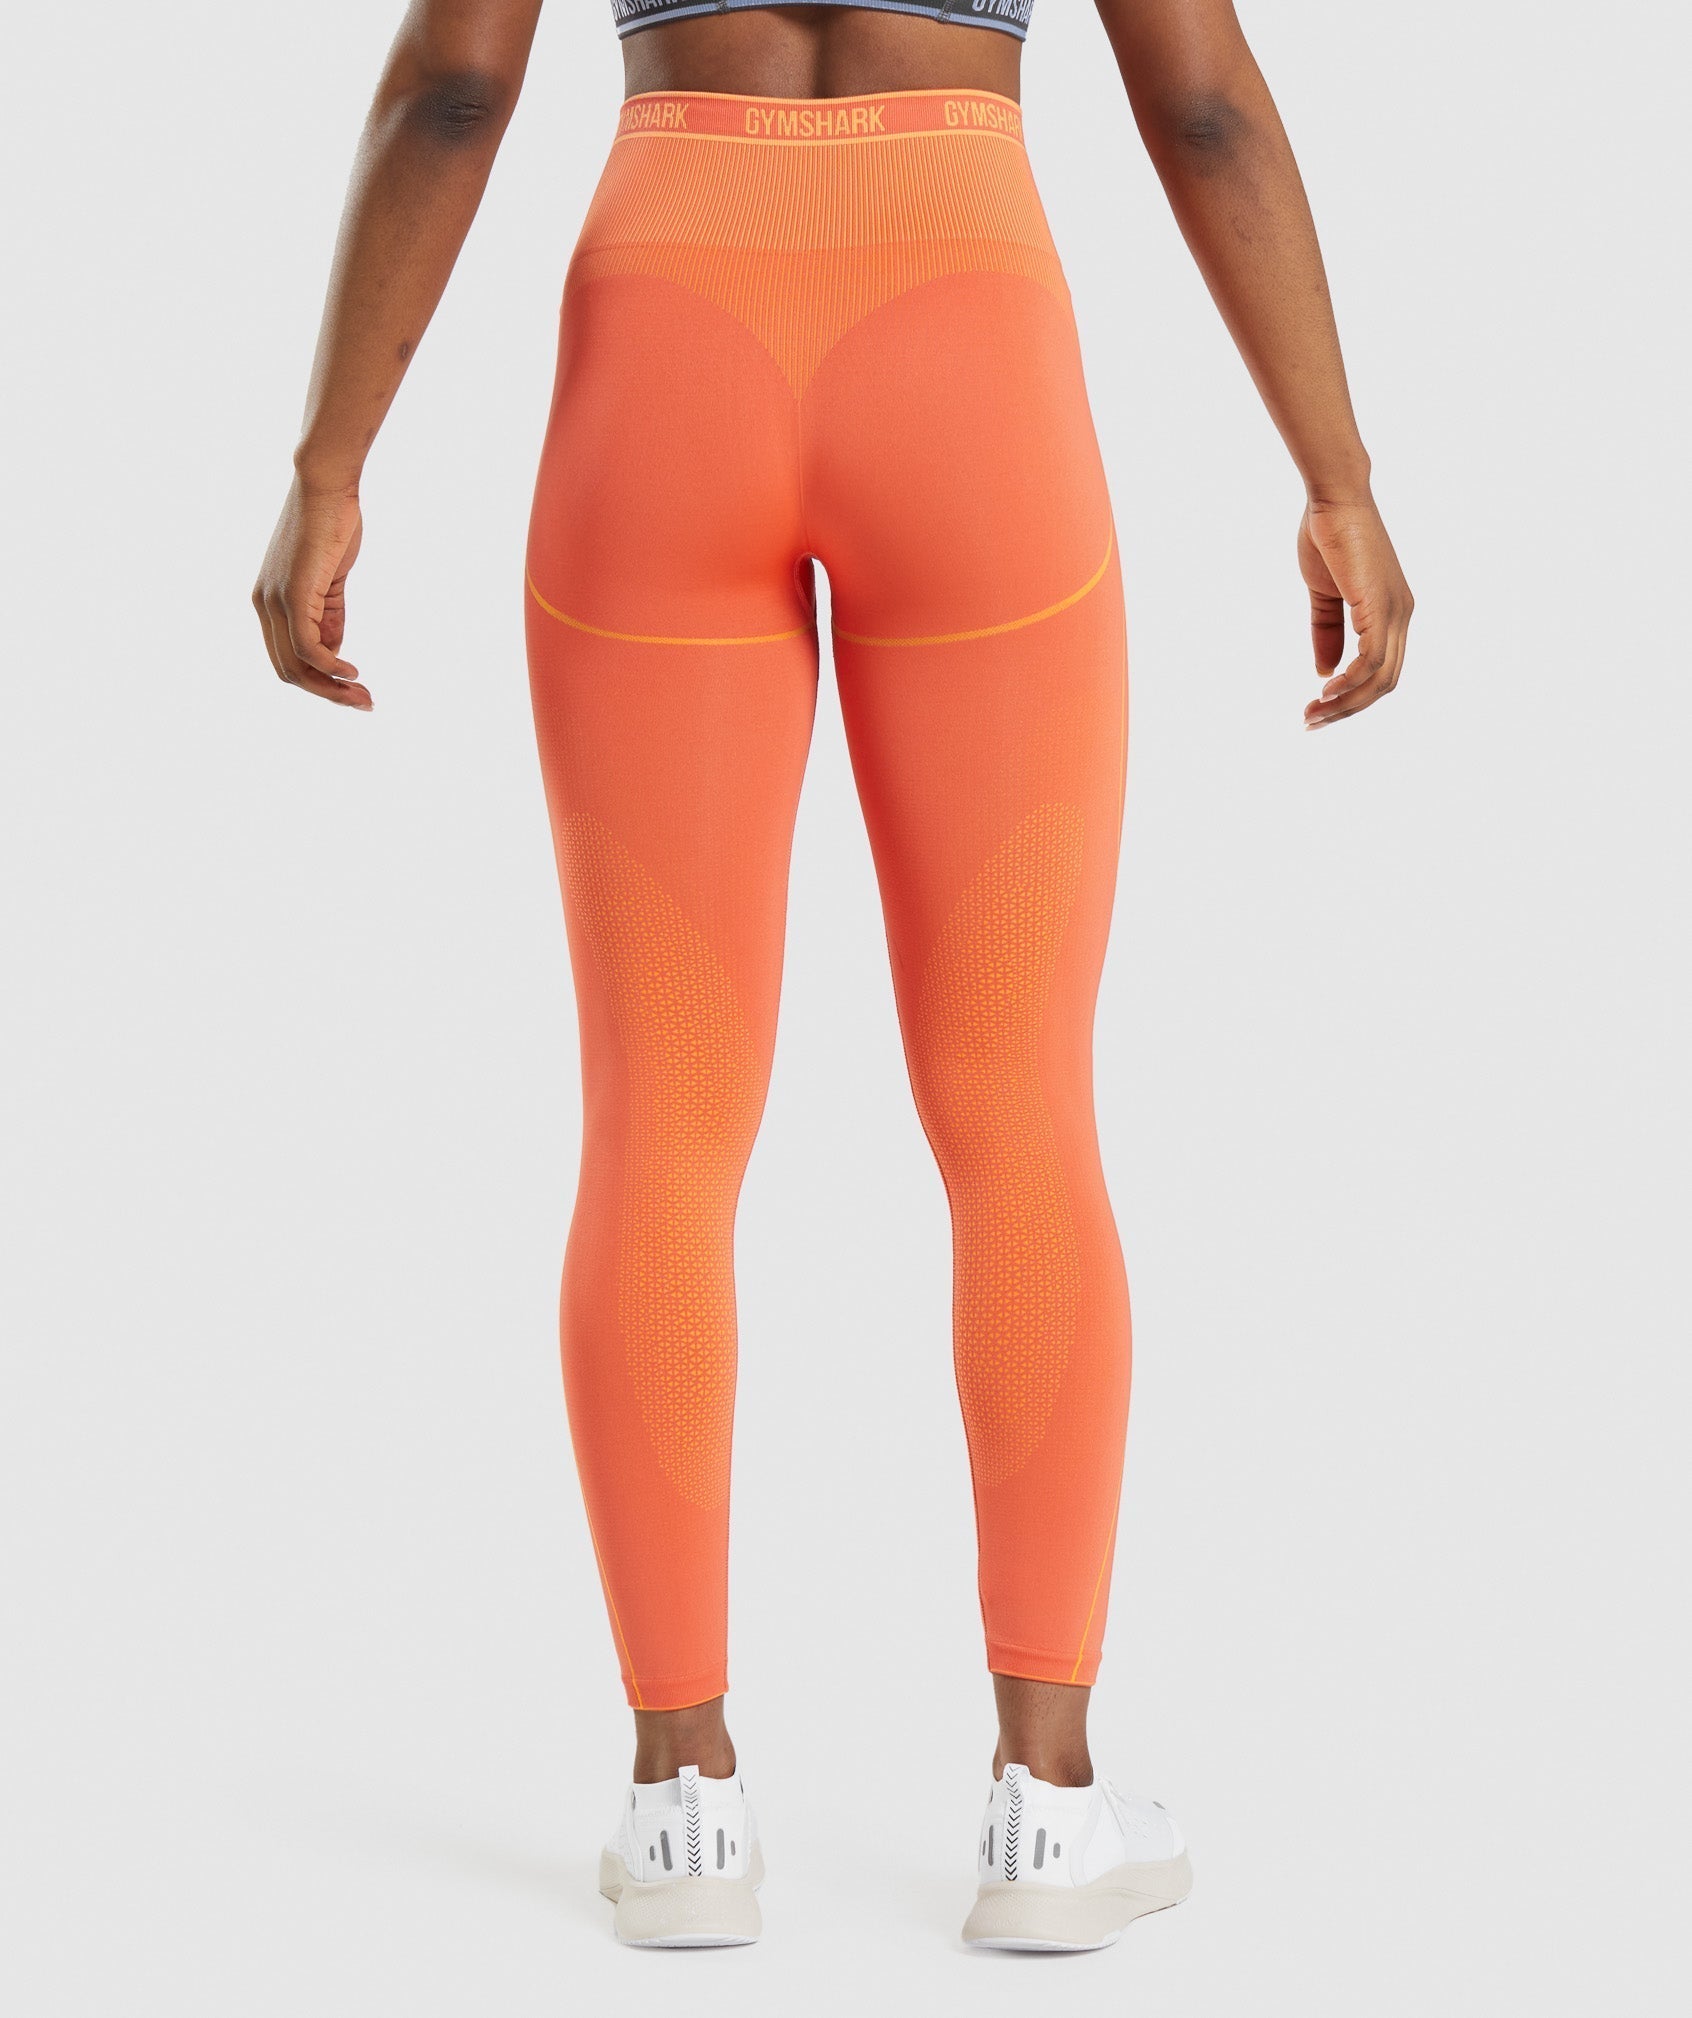 Gymshark orange leggings - size small Slight piling - Depop